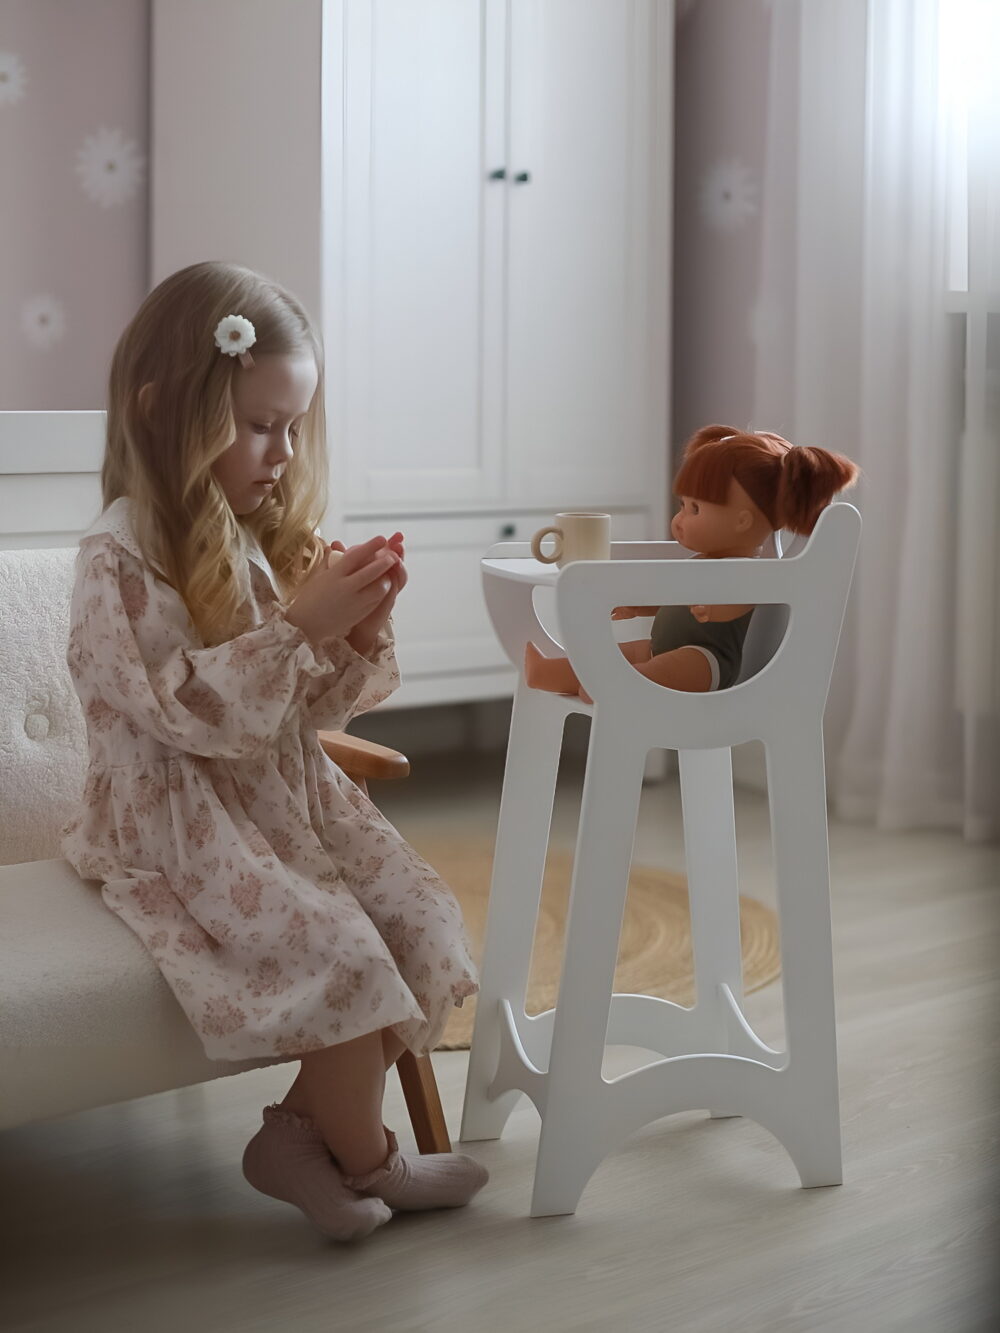 На стульчике для кормления кукол сидит игрушка, девочка в красивом розовом платье подает ей чат